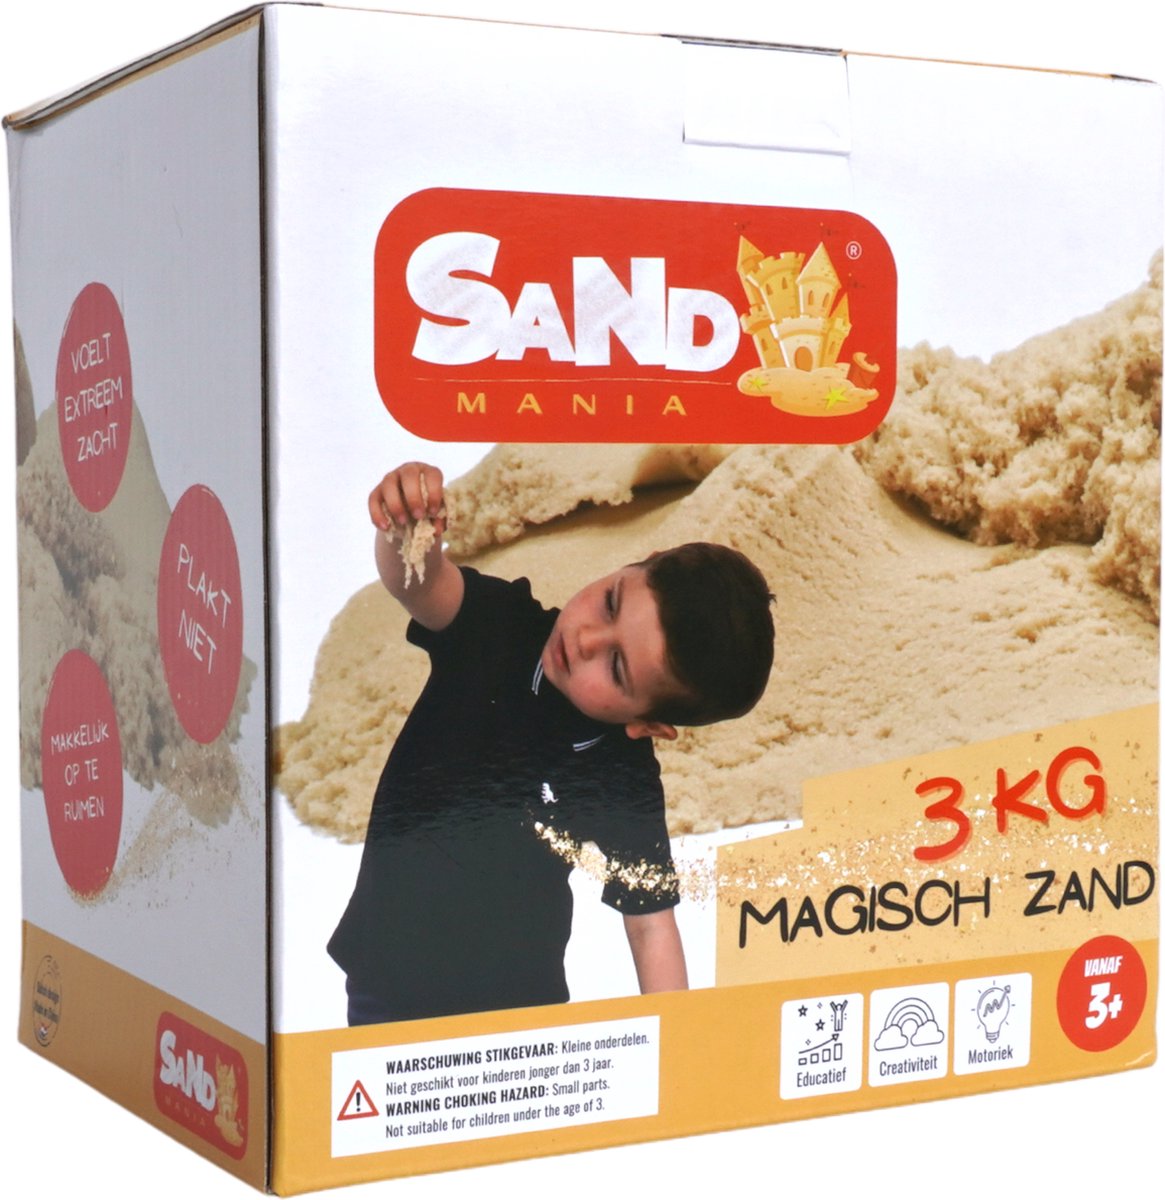 Sand mania® - Kinetisch zand - 3kg bruin magisch zand - Inclusief roller - Speelzand - Magic sand - Unieke samenstelling- Montessori speelgoed